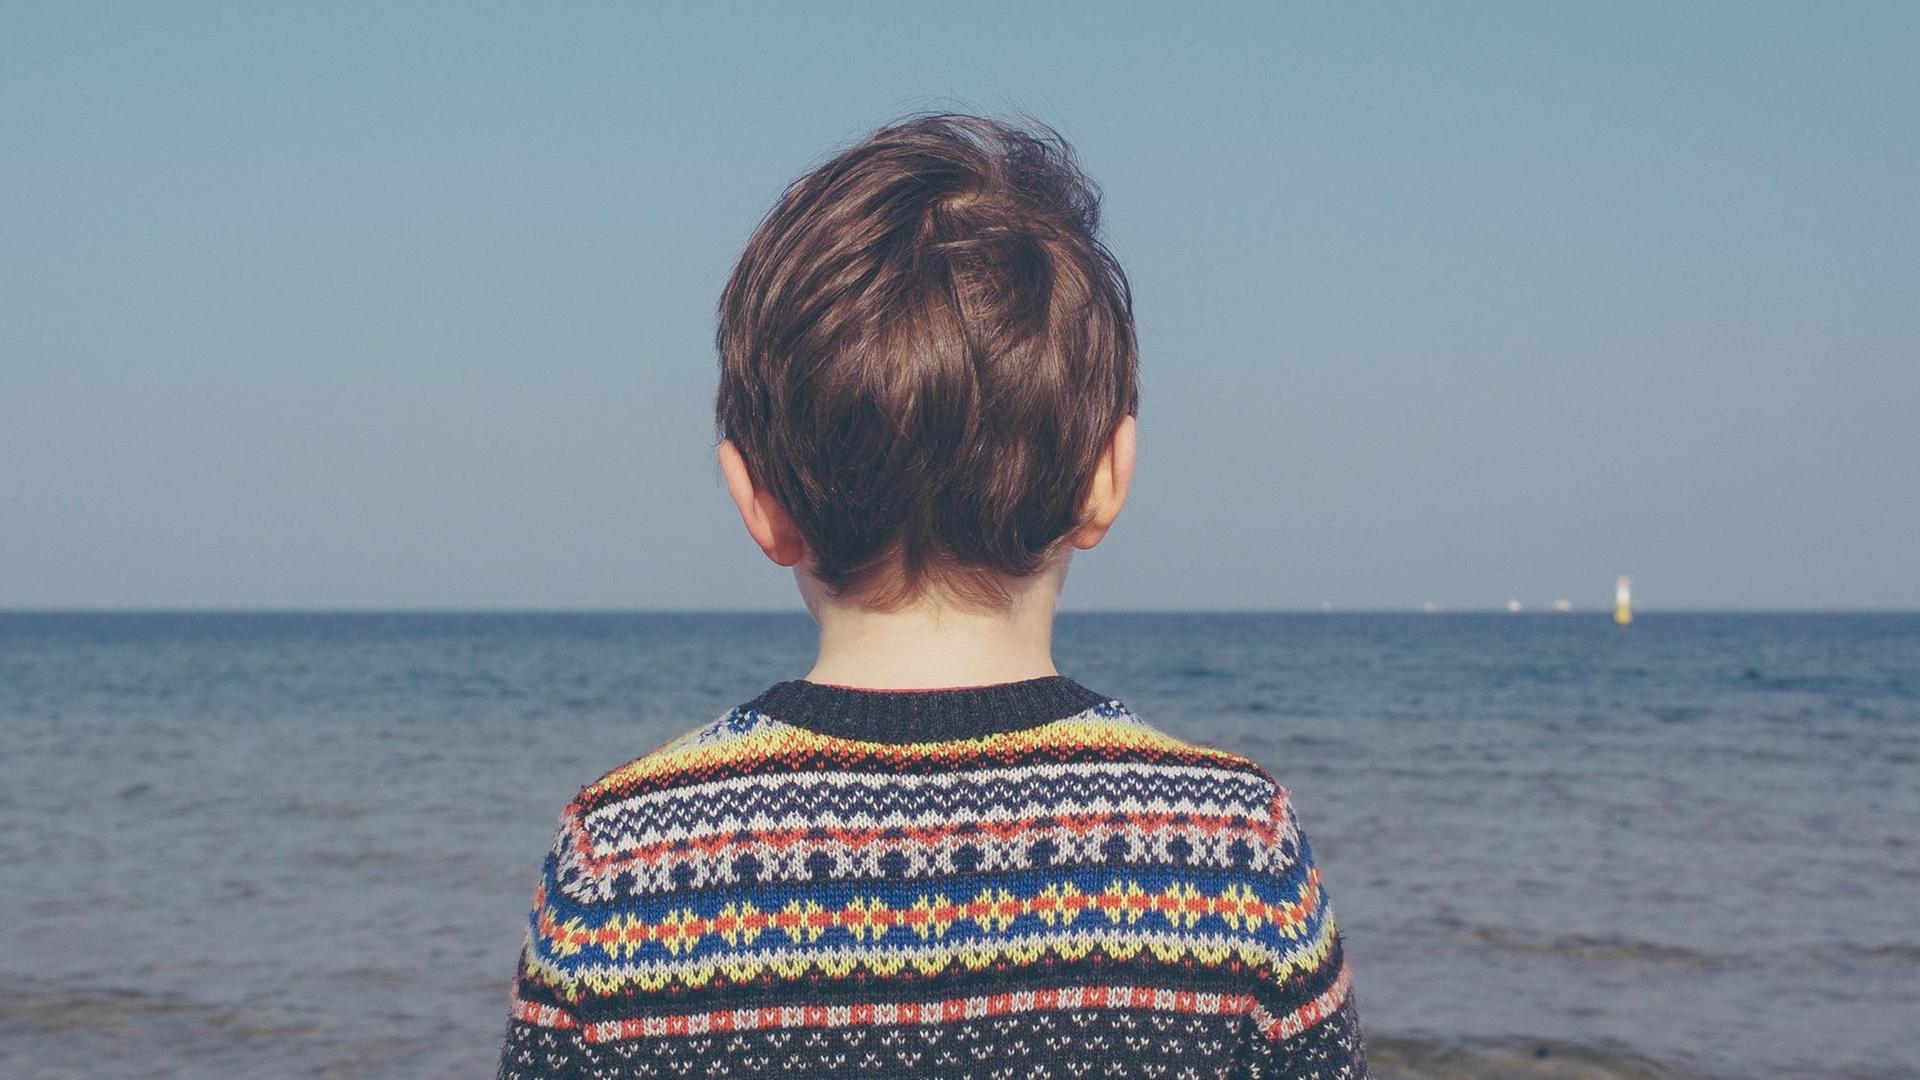 Ein Junge blickt alleine in Richtung Meer, bekleidet mit einem bunten Strickpulli. (Symbolbild)